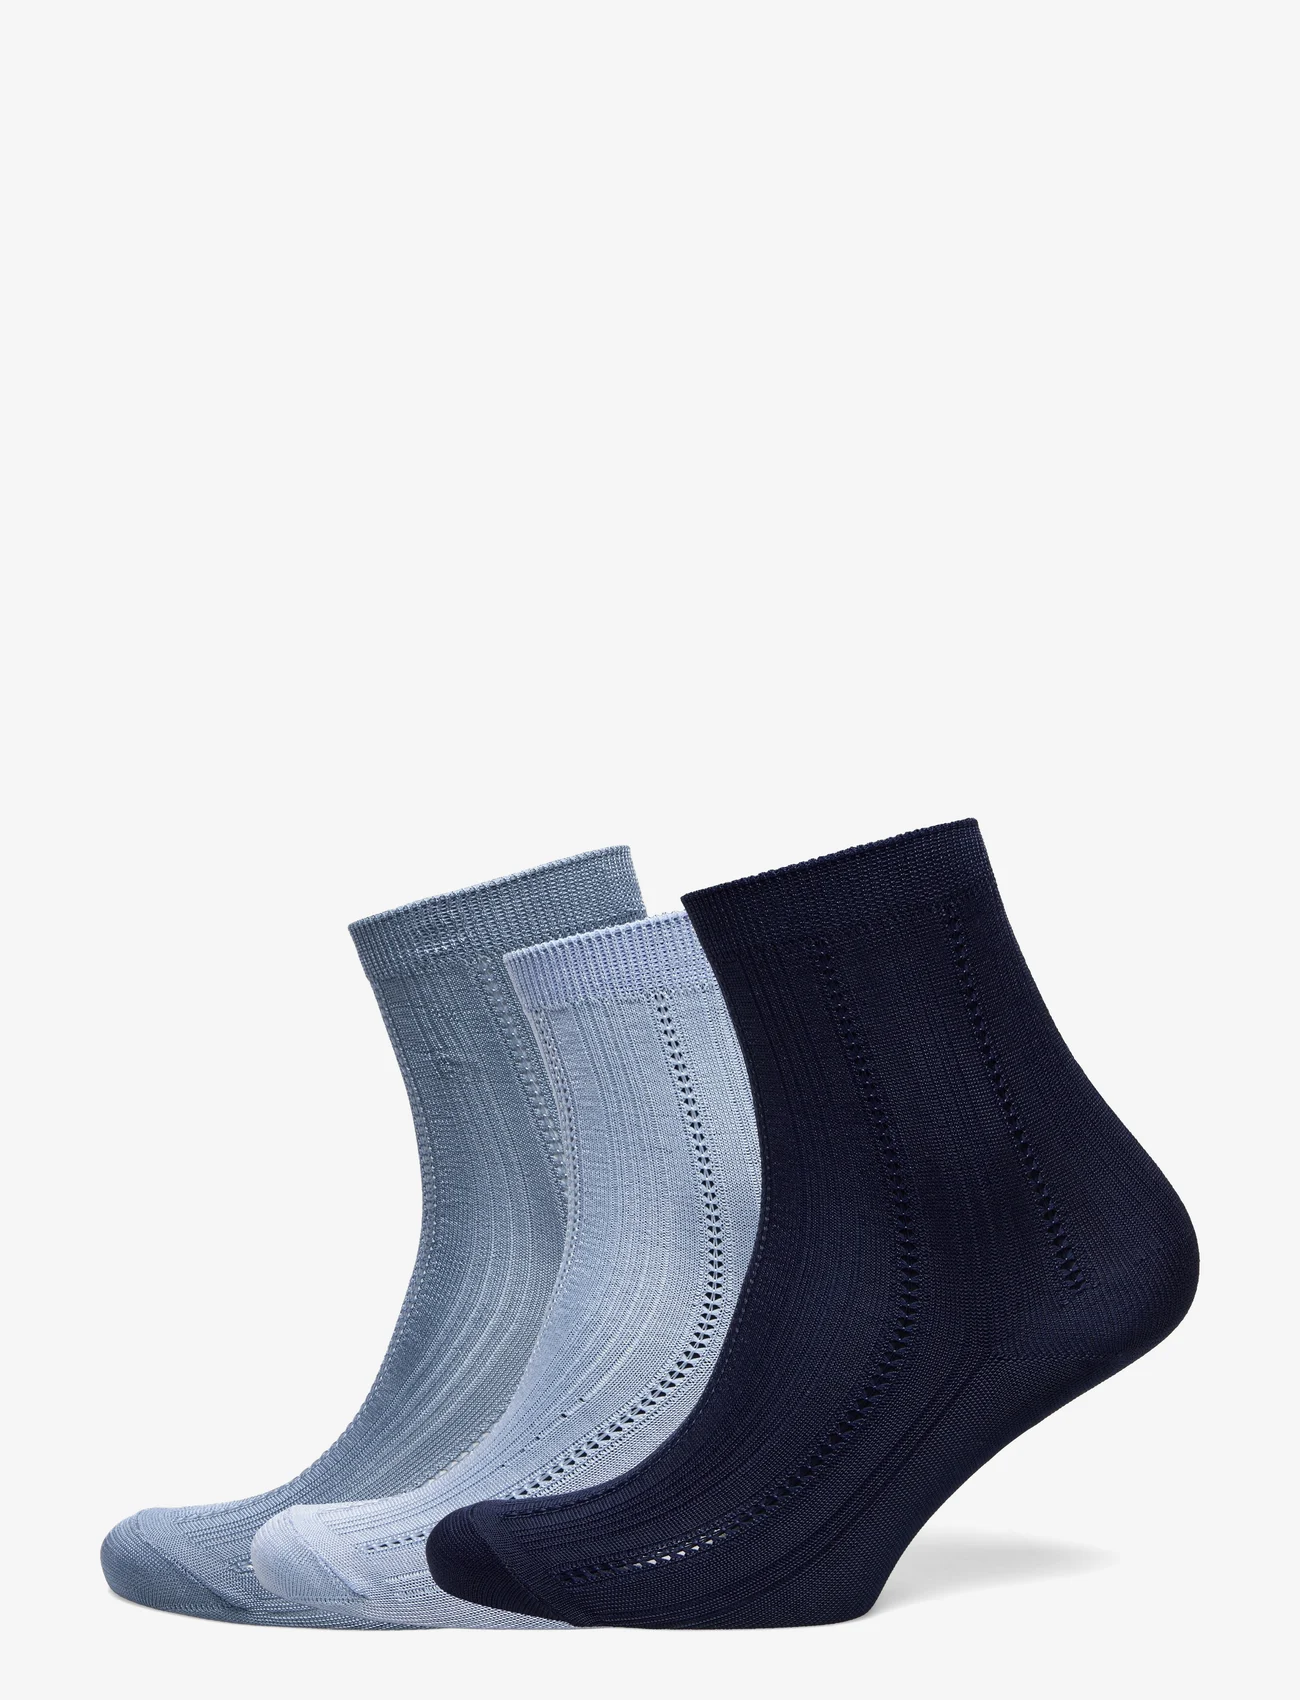 Becksöndergaard - Solid Drake Sock 3 Pack - lägsta priserna - blue tones - 0